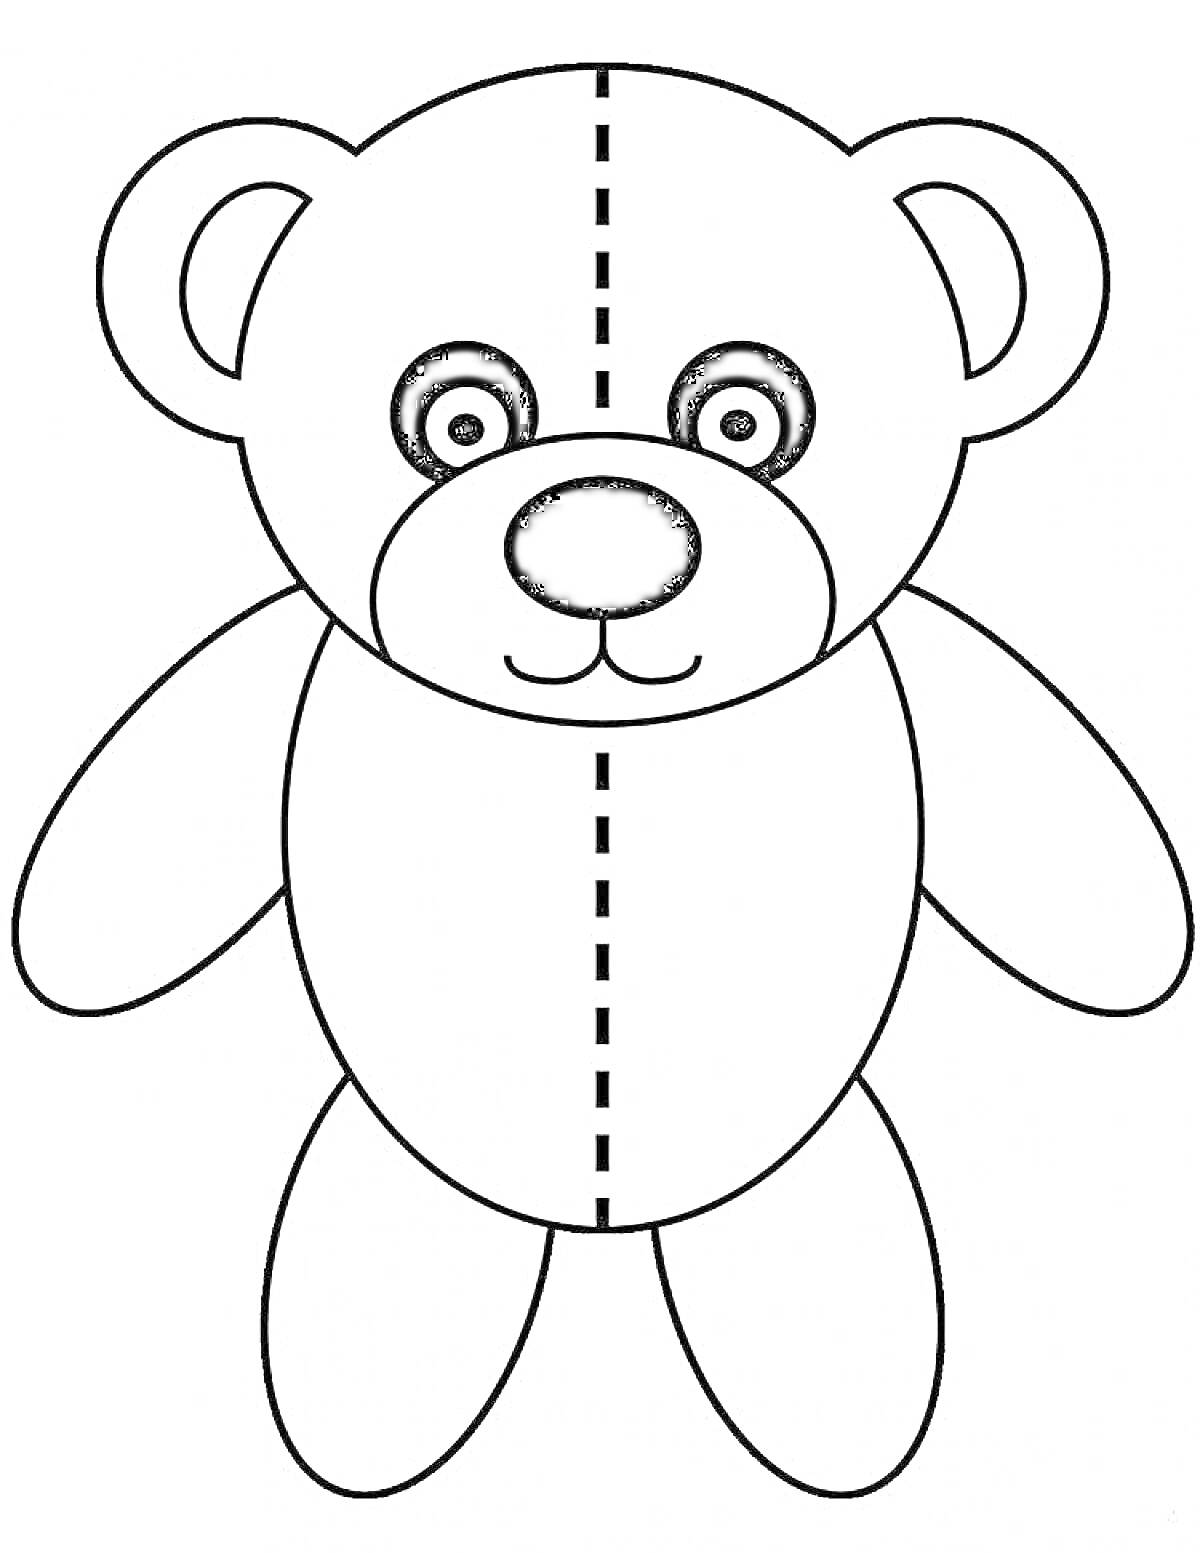 Раскраска Мишка с пунктирной линией для симметрии